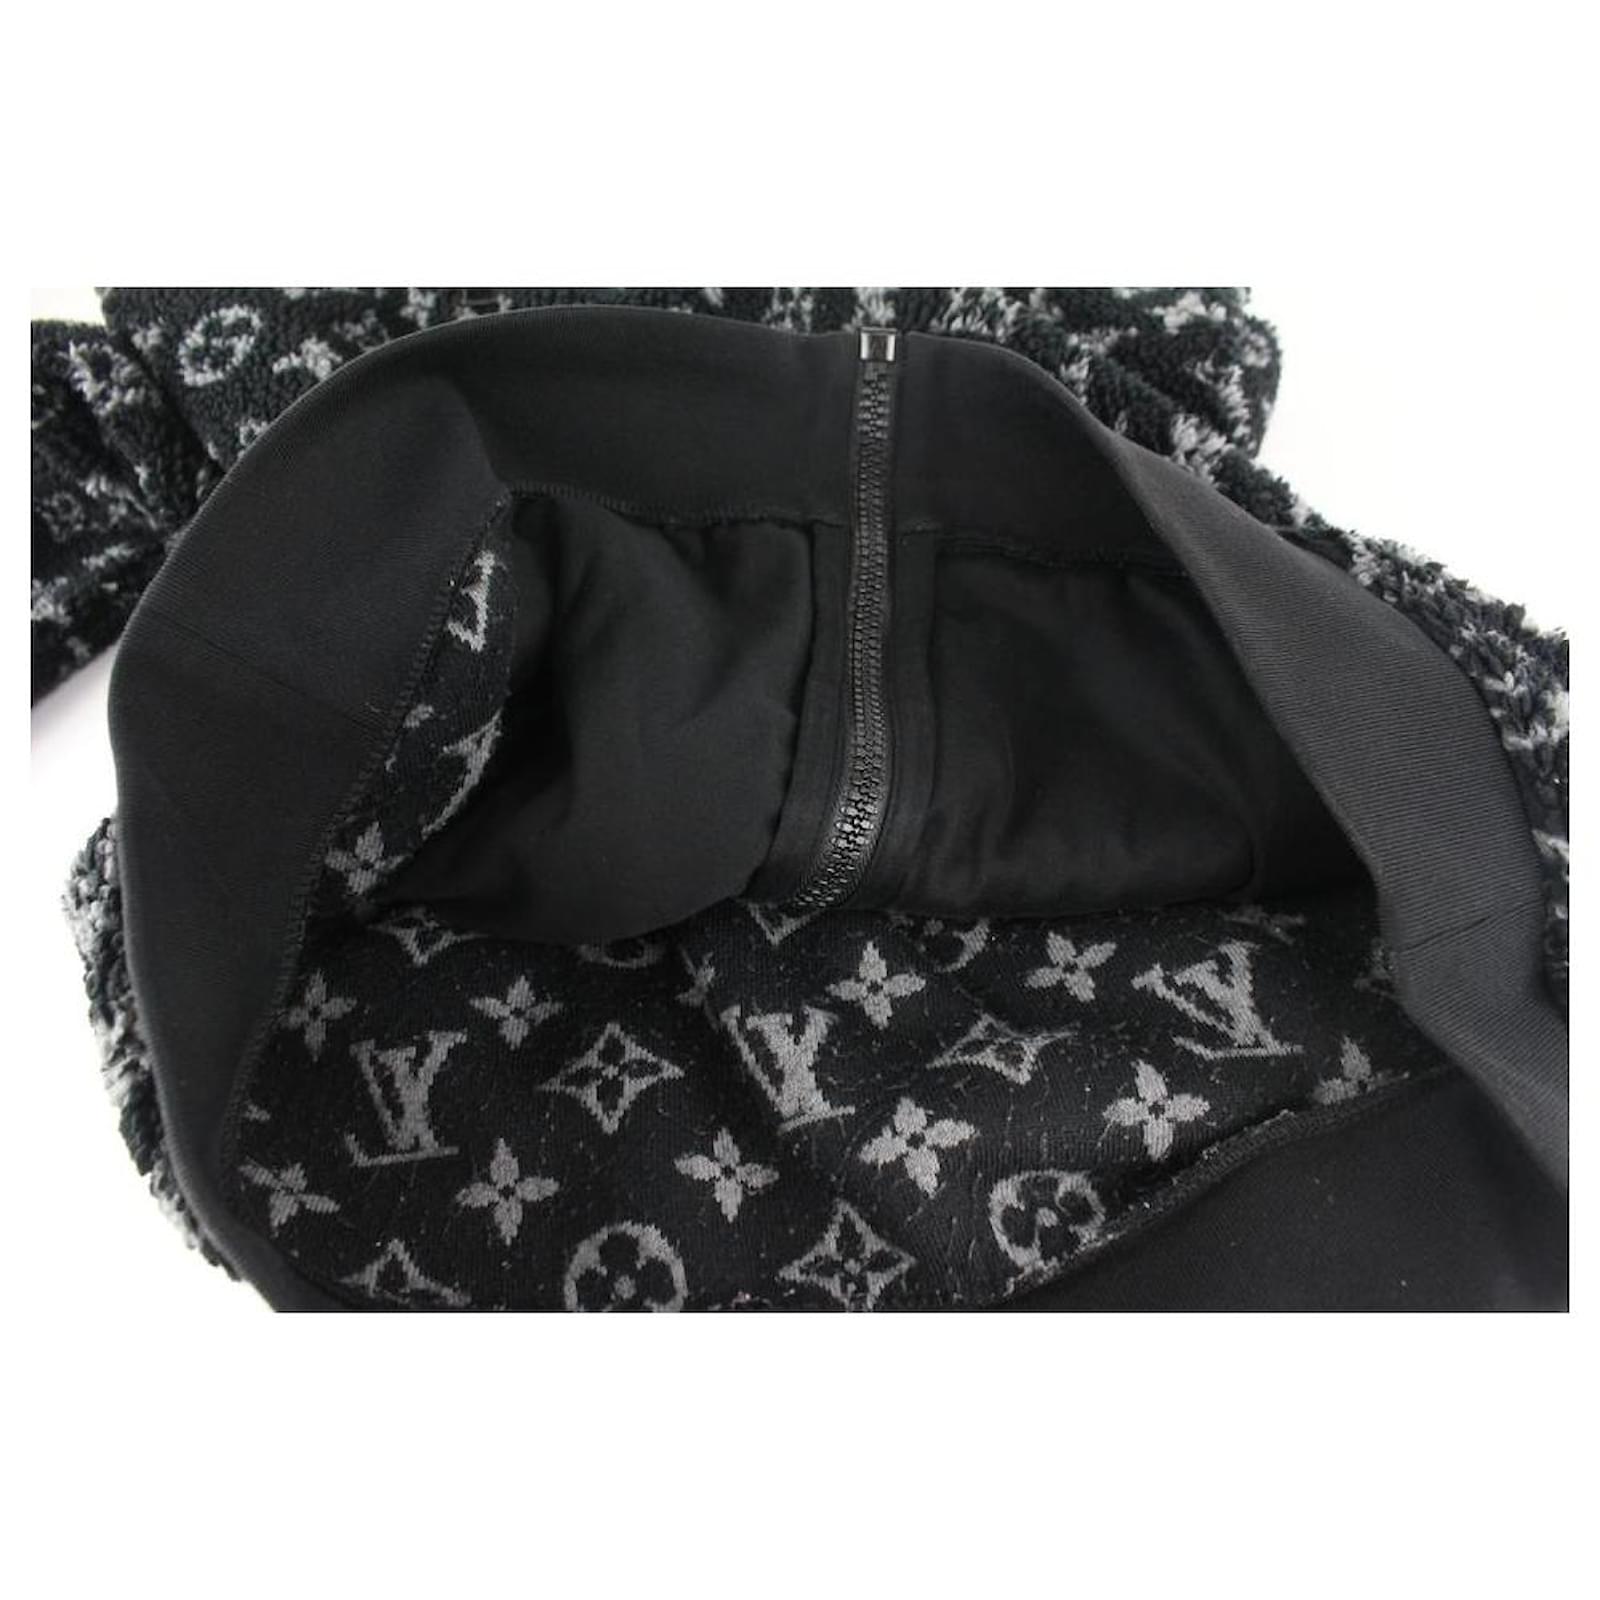 Men's XL Black x Grey Monogram Teddy Jacket Fleece Zip Up